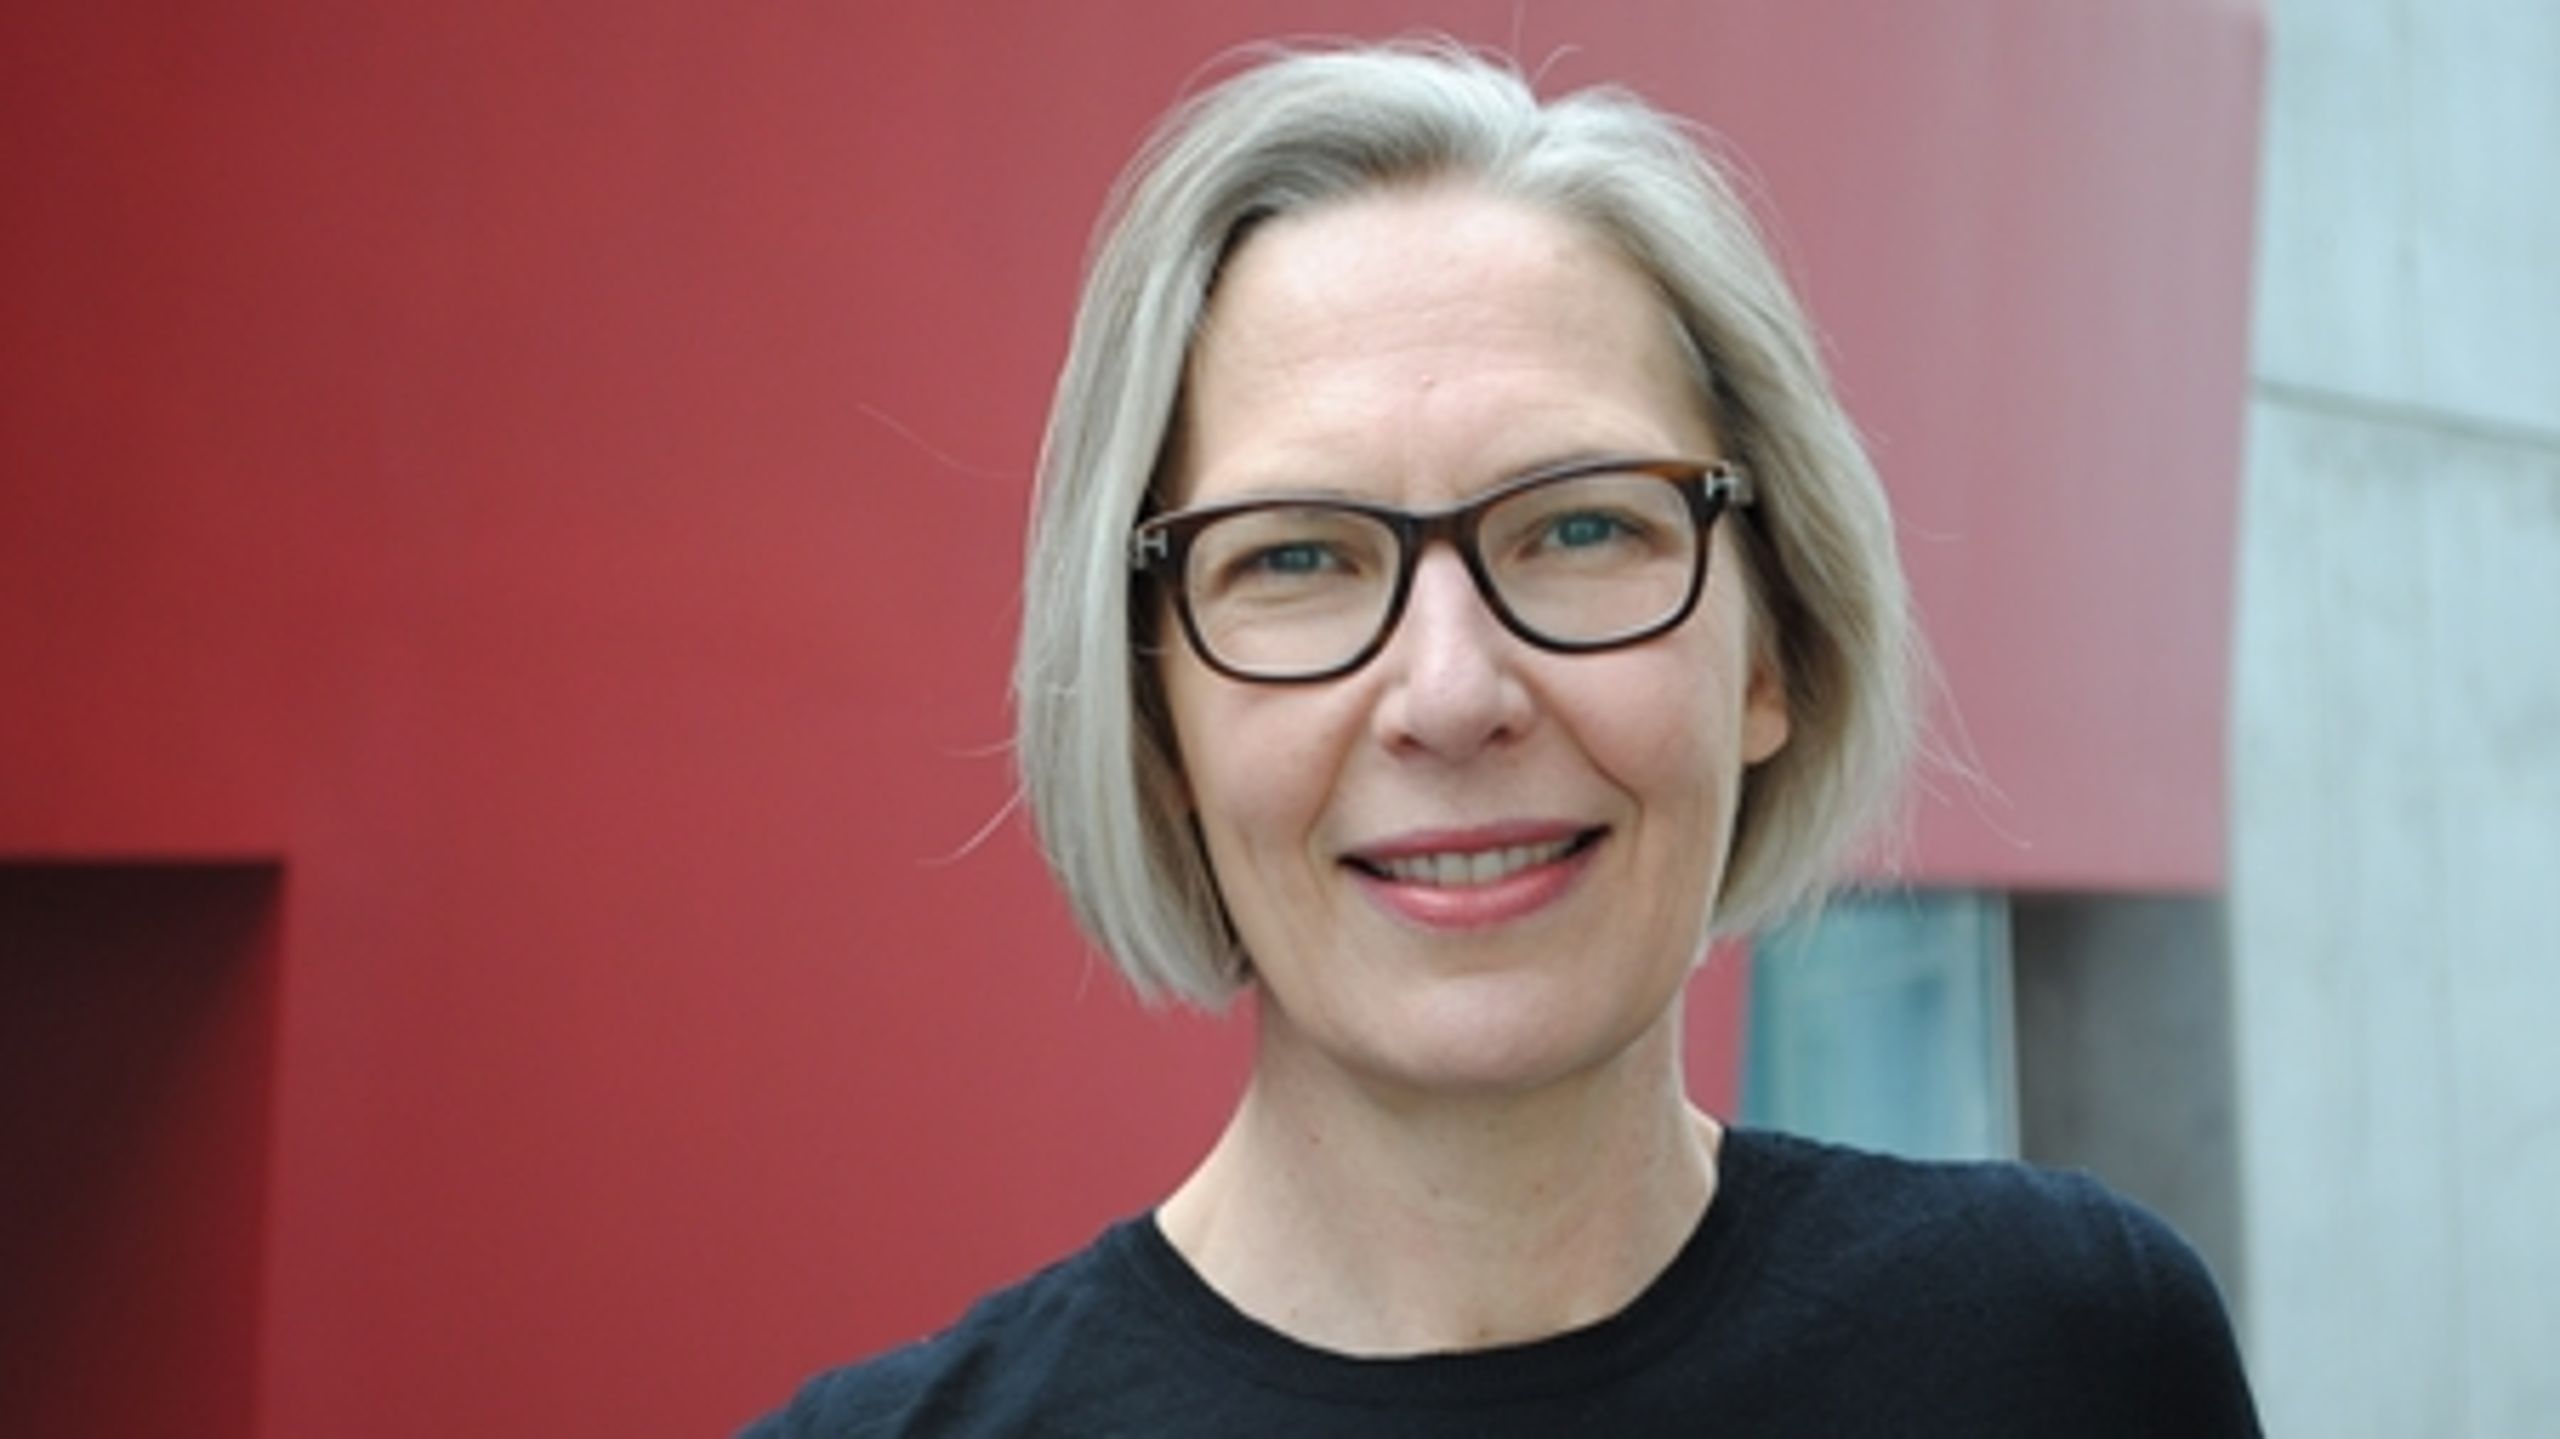 Den juristuddannede generaldirektør Maria Rørbye Rønn er velset på Slotsholmens gange med sin kliniske tilgang til stoffet, skriver Hegelund og Mose.